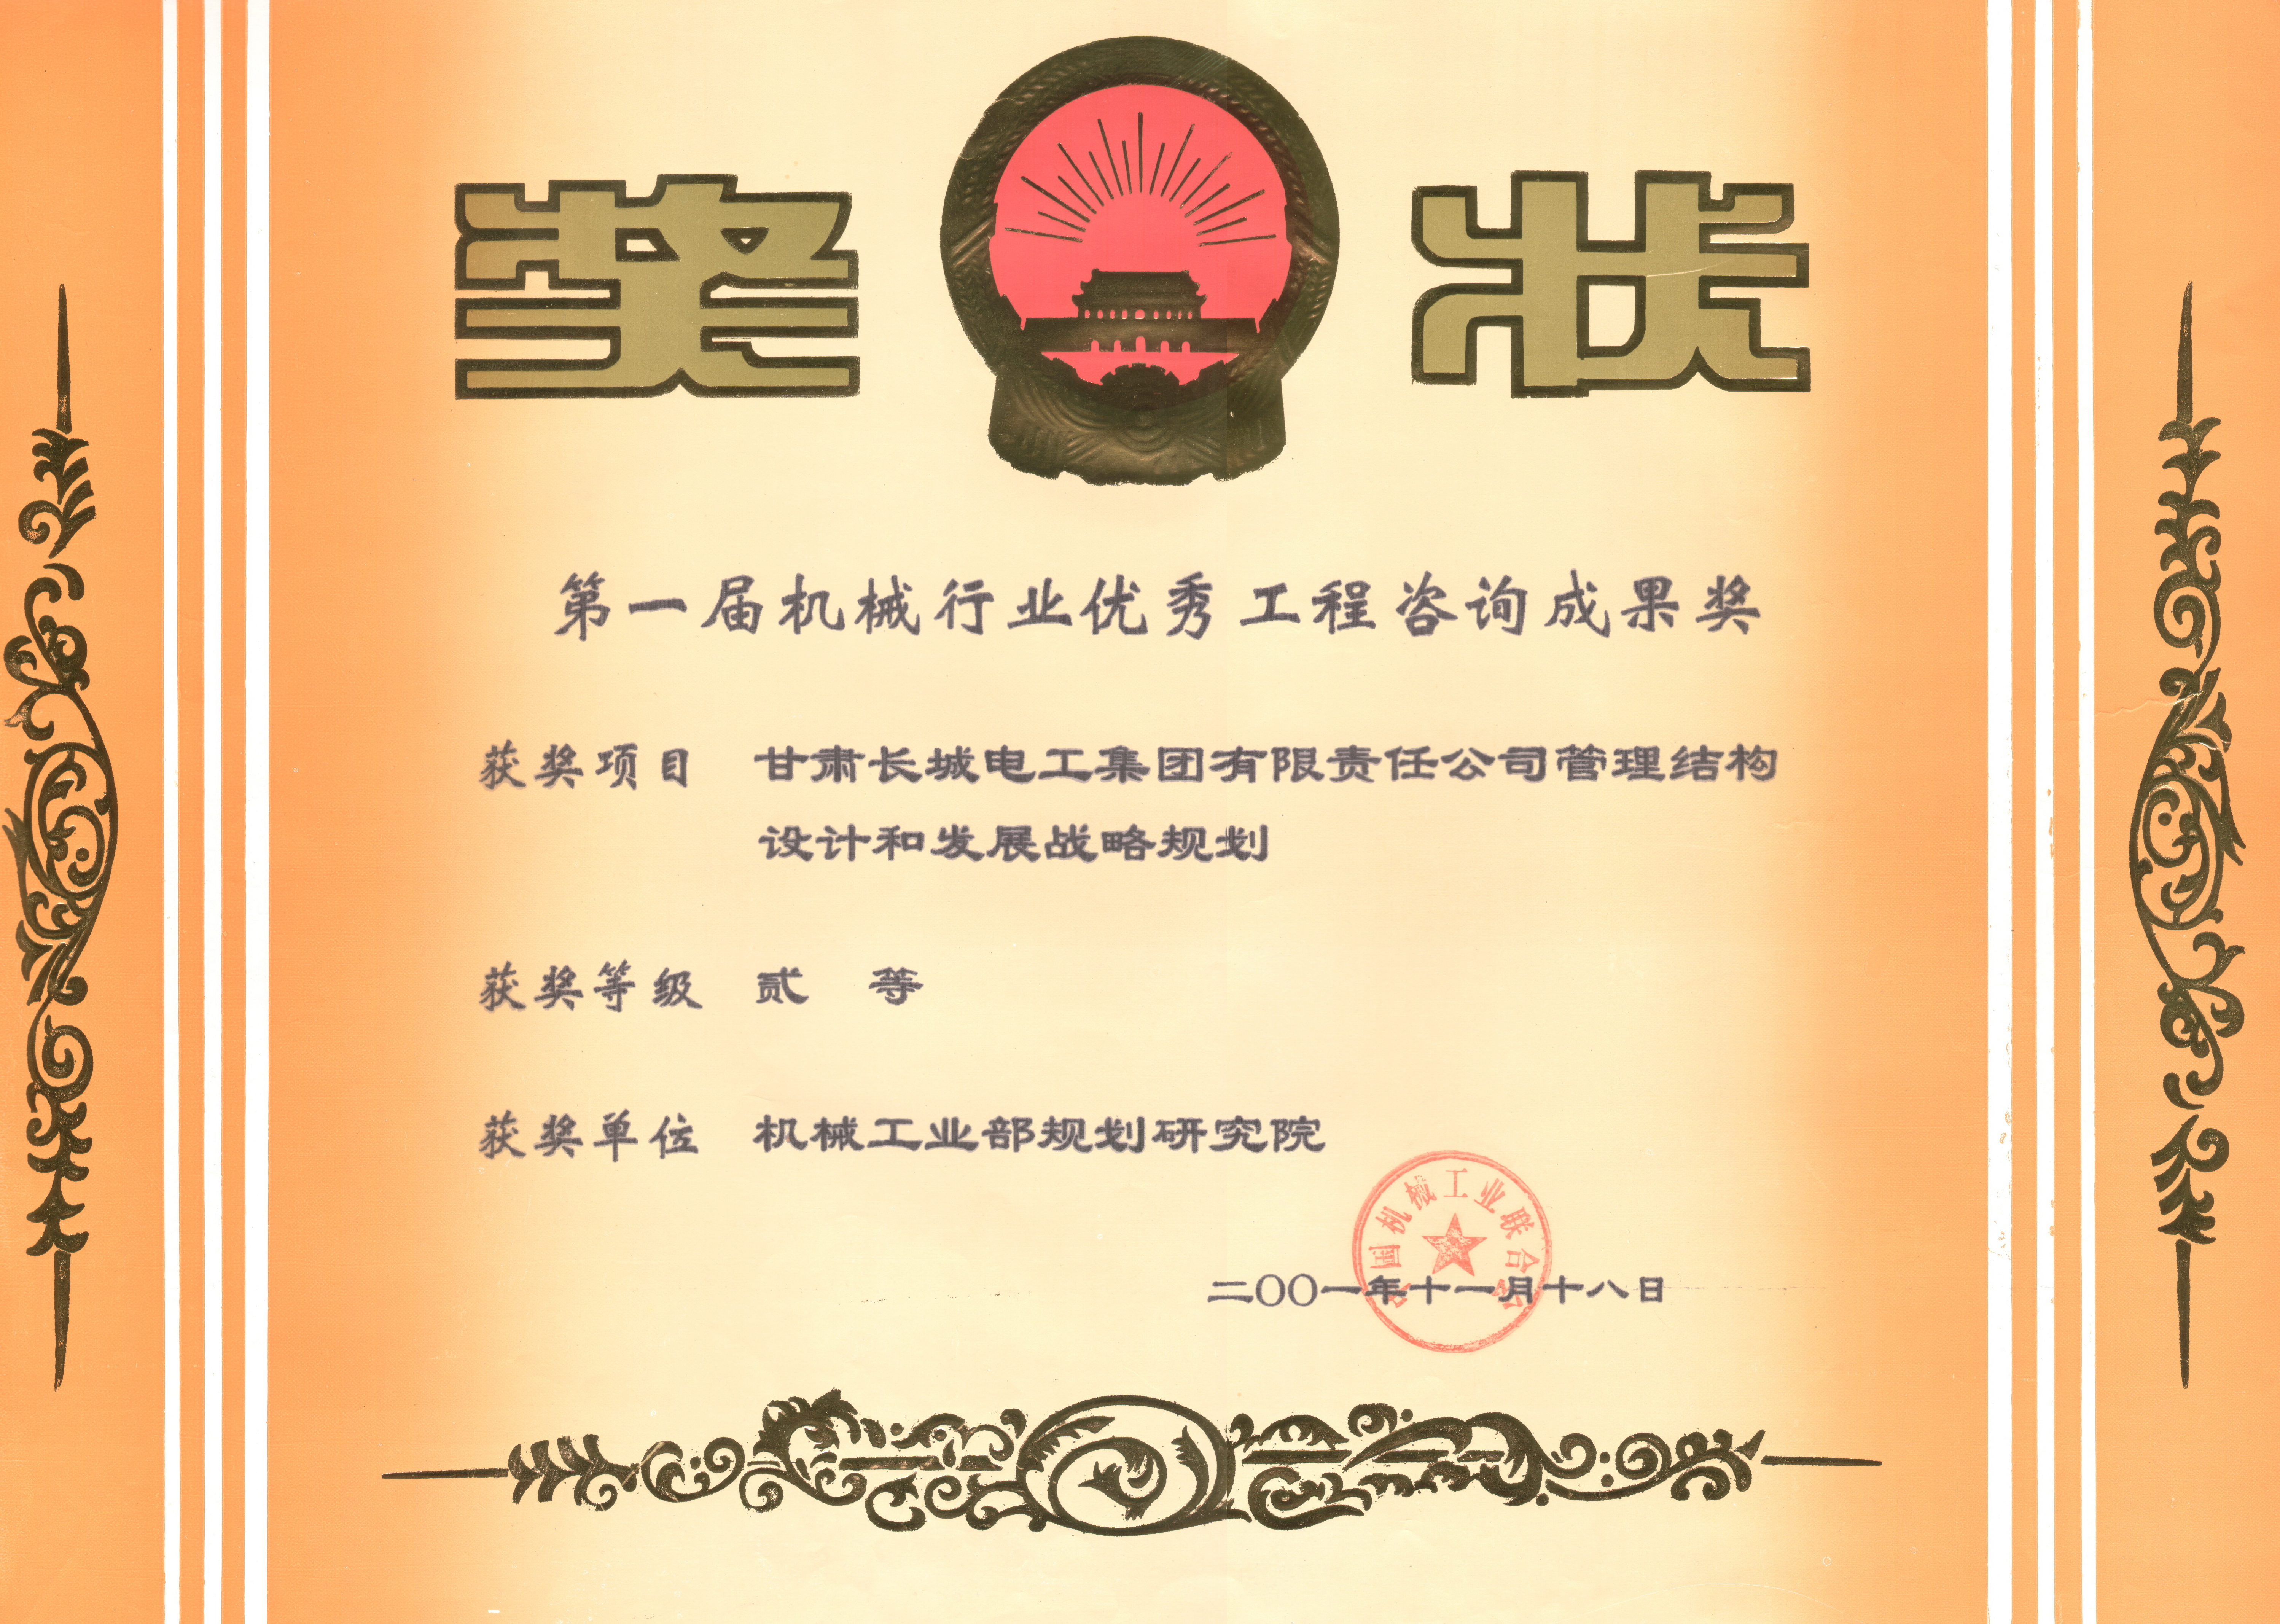 2001年 甘肃长城电工集团管理机构设计第一届机械行业优秀工程咨询二等奖－.jpg